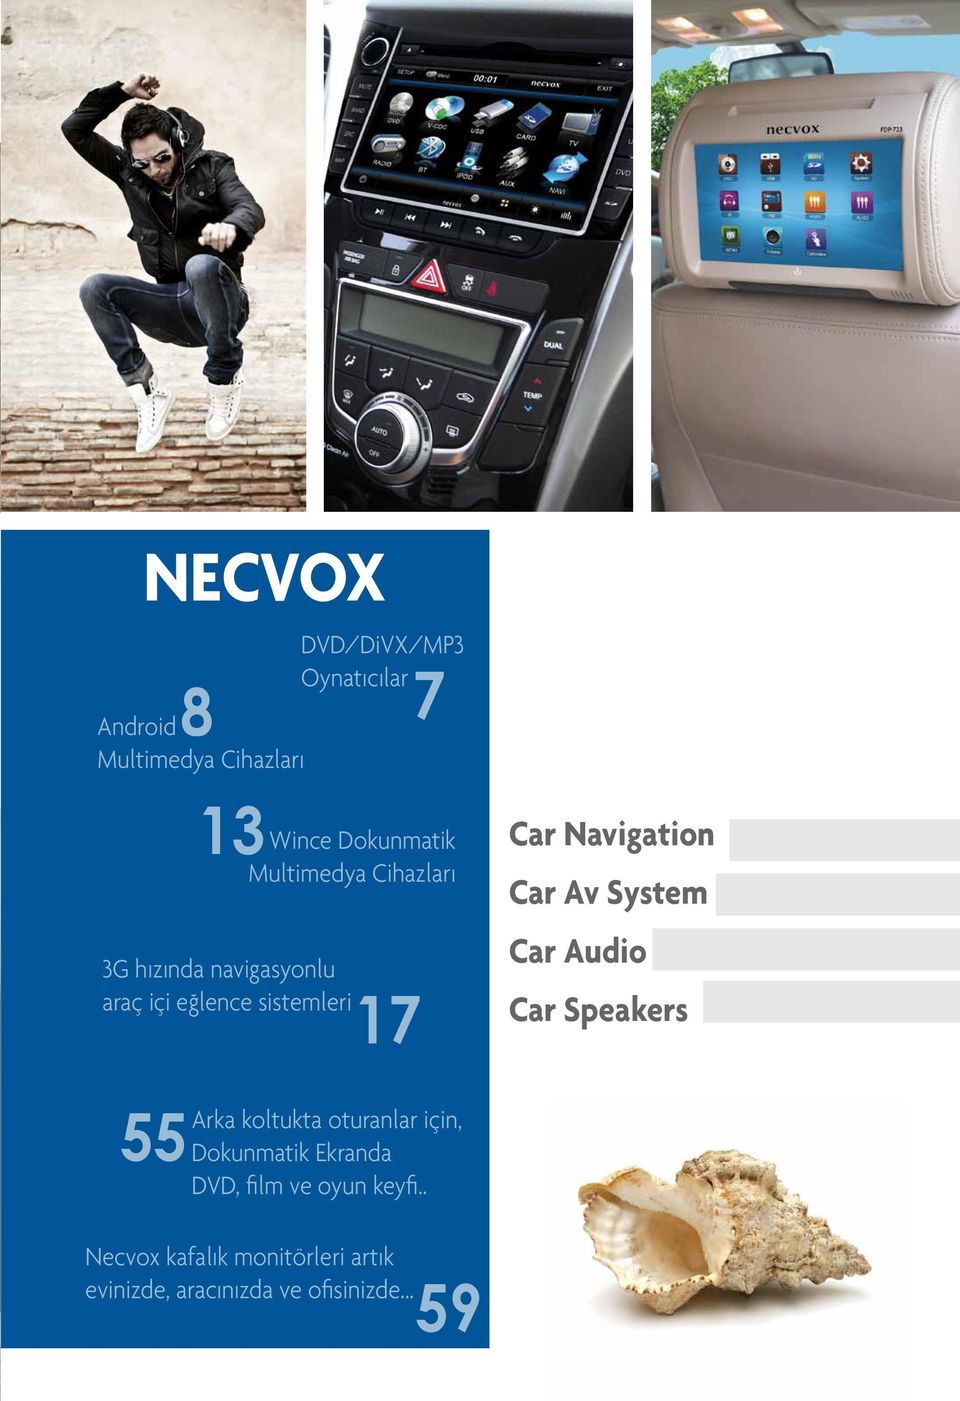 Car Audio Car Speakers 55 Arka koltukta oturanlar için, Dokunmatik Ekranda DVD,